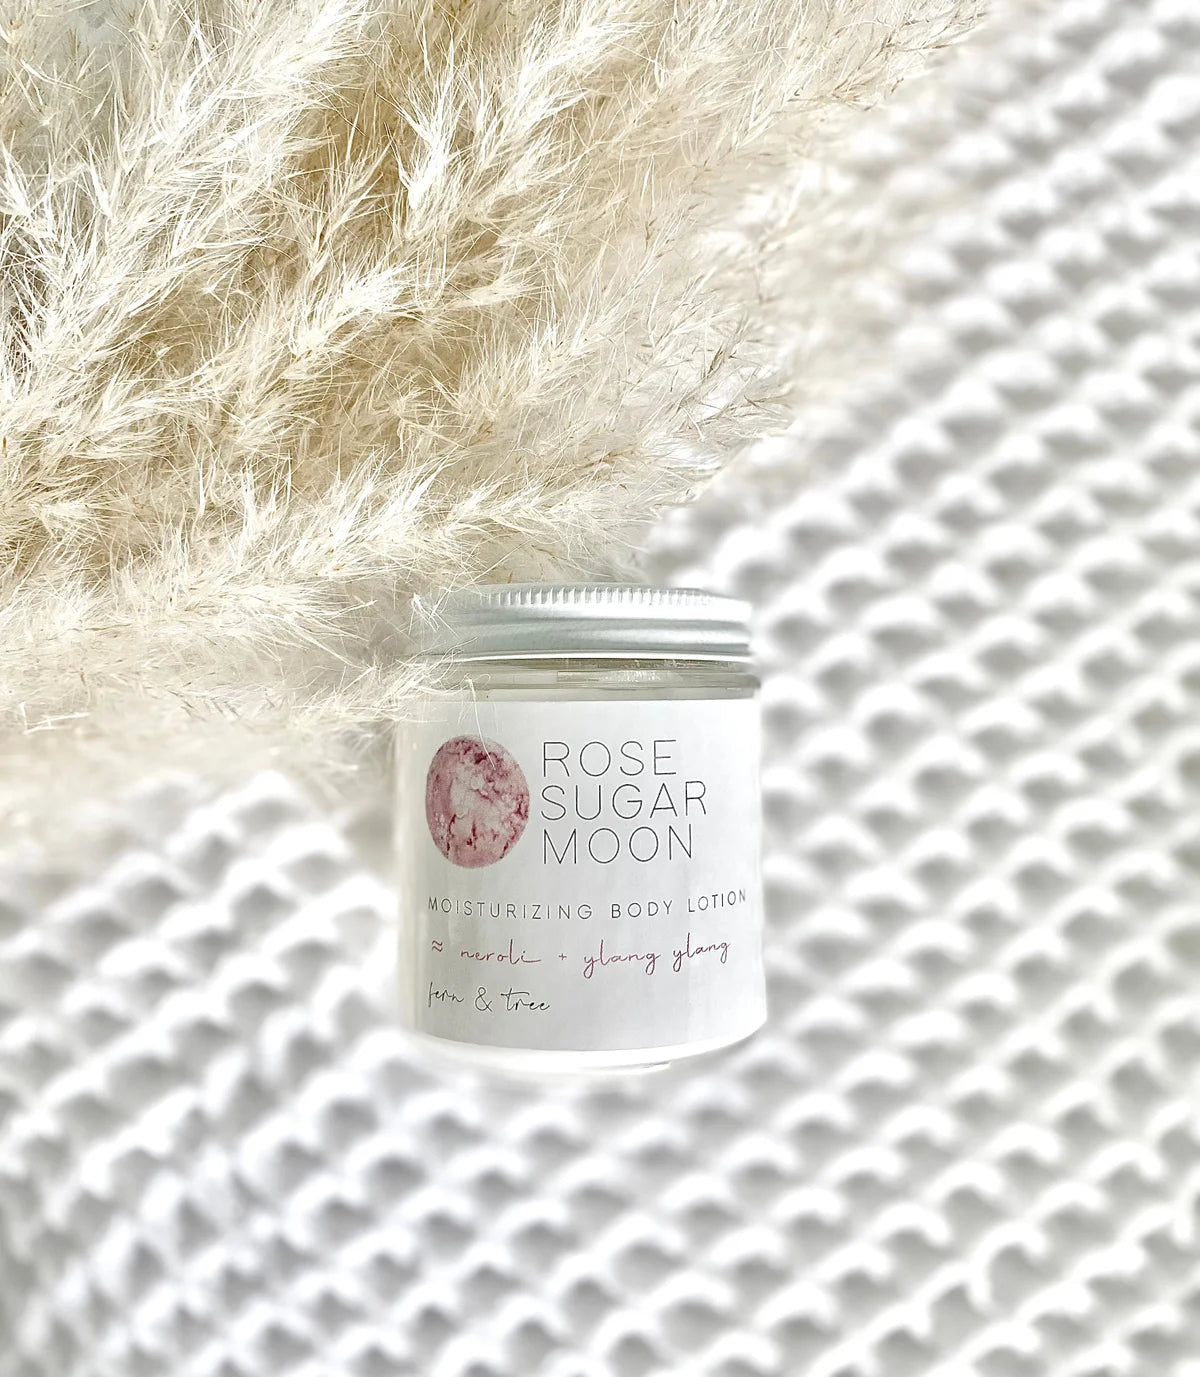 Fern & Tree - Rose Sugar Moon body lotion